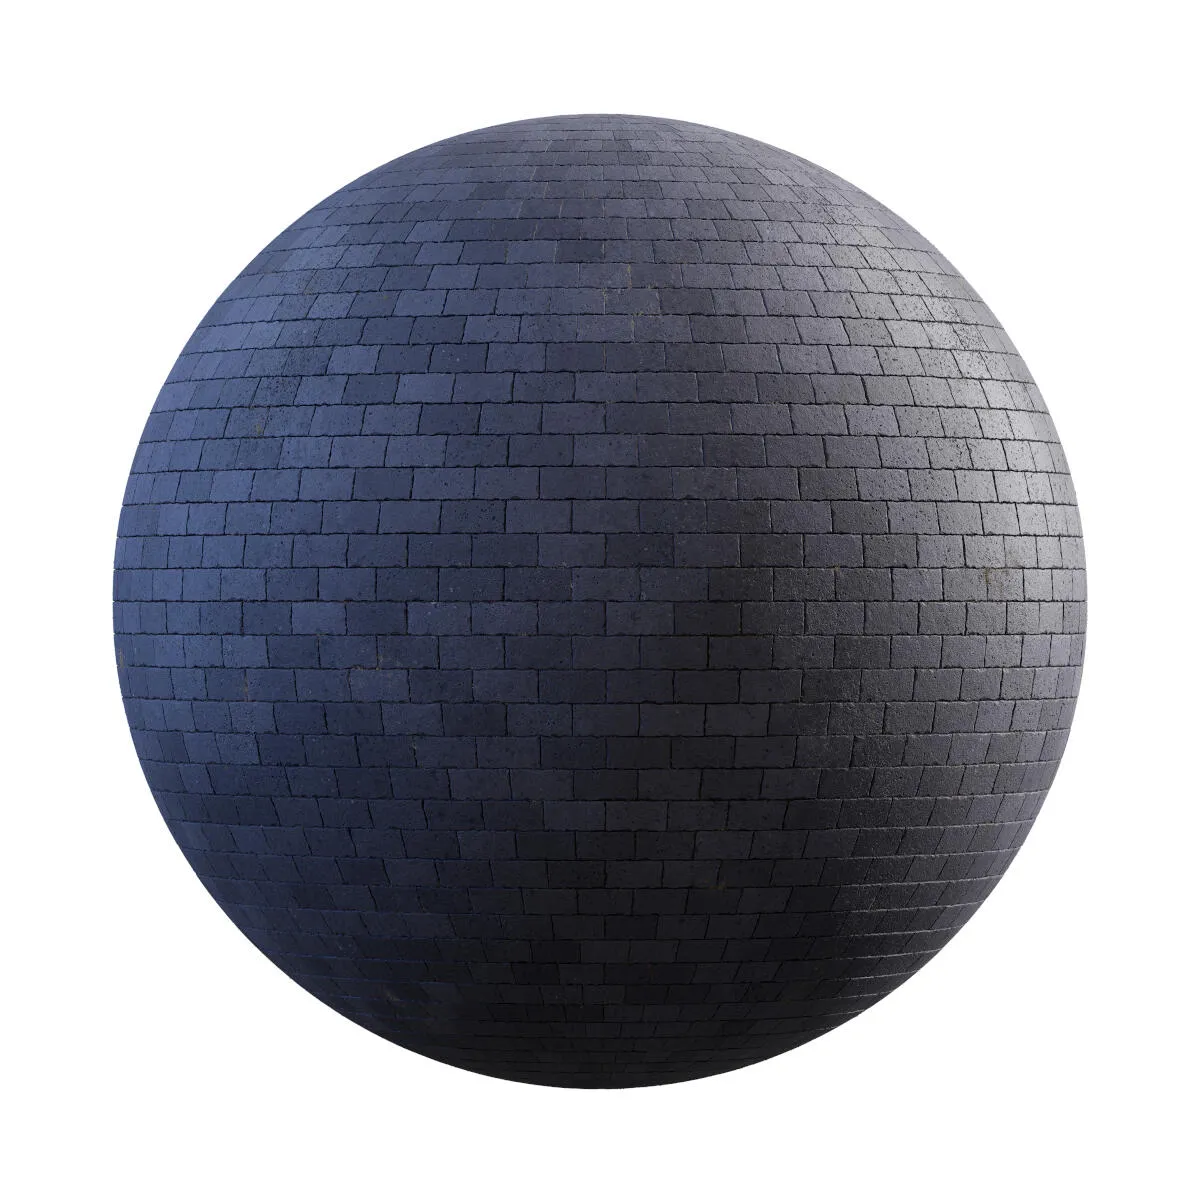 PBR Textures Volume 34 – Pavements – 4K – dark_grey_concrete_pavement_36_16